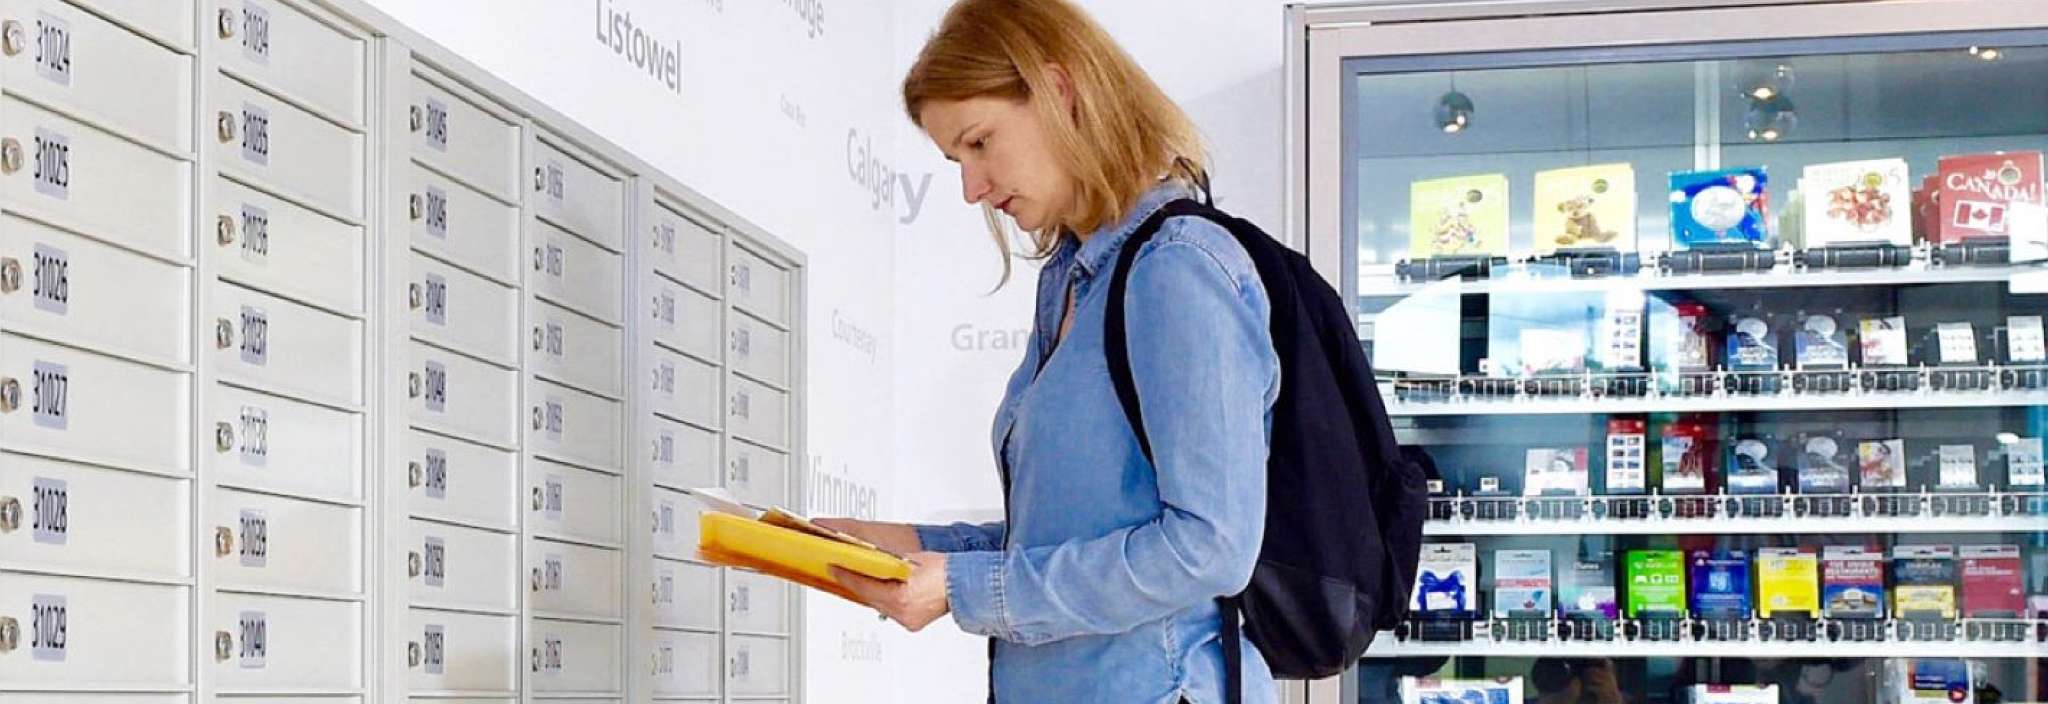 Une femme dans un bureau de poste examine une petite pile de courrier récupérée dans sa case postale de Postes Canada